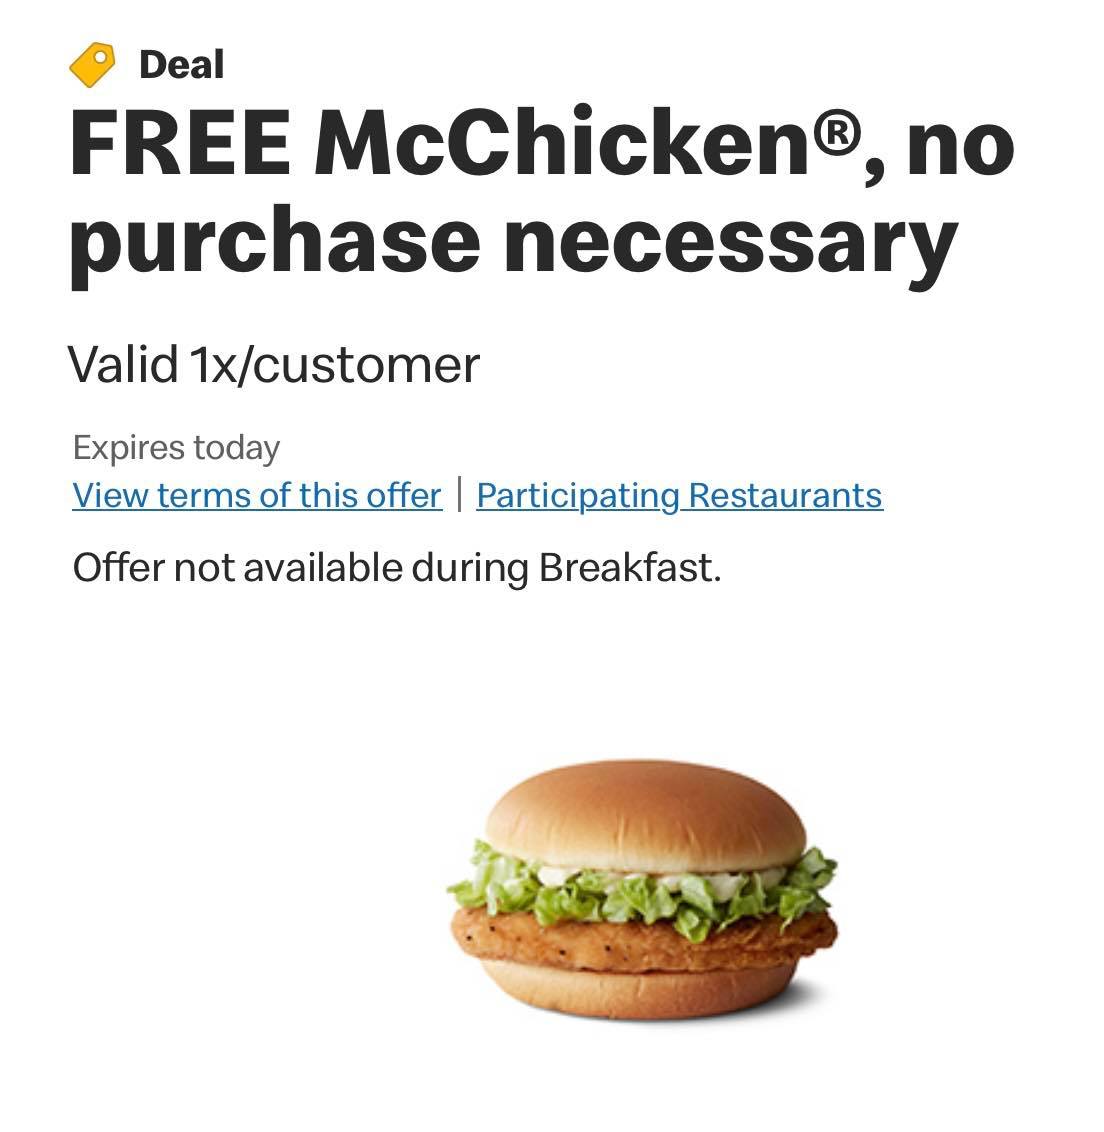 【免費福利】麥當勞 McChicken x1 FREE 